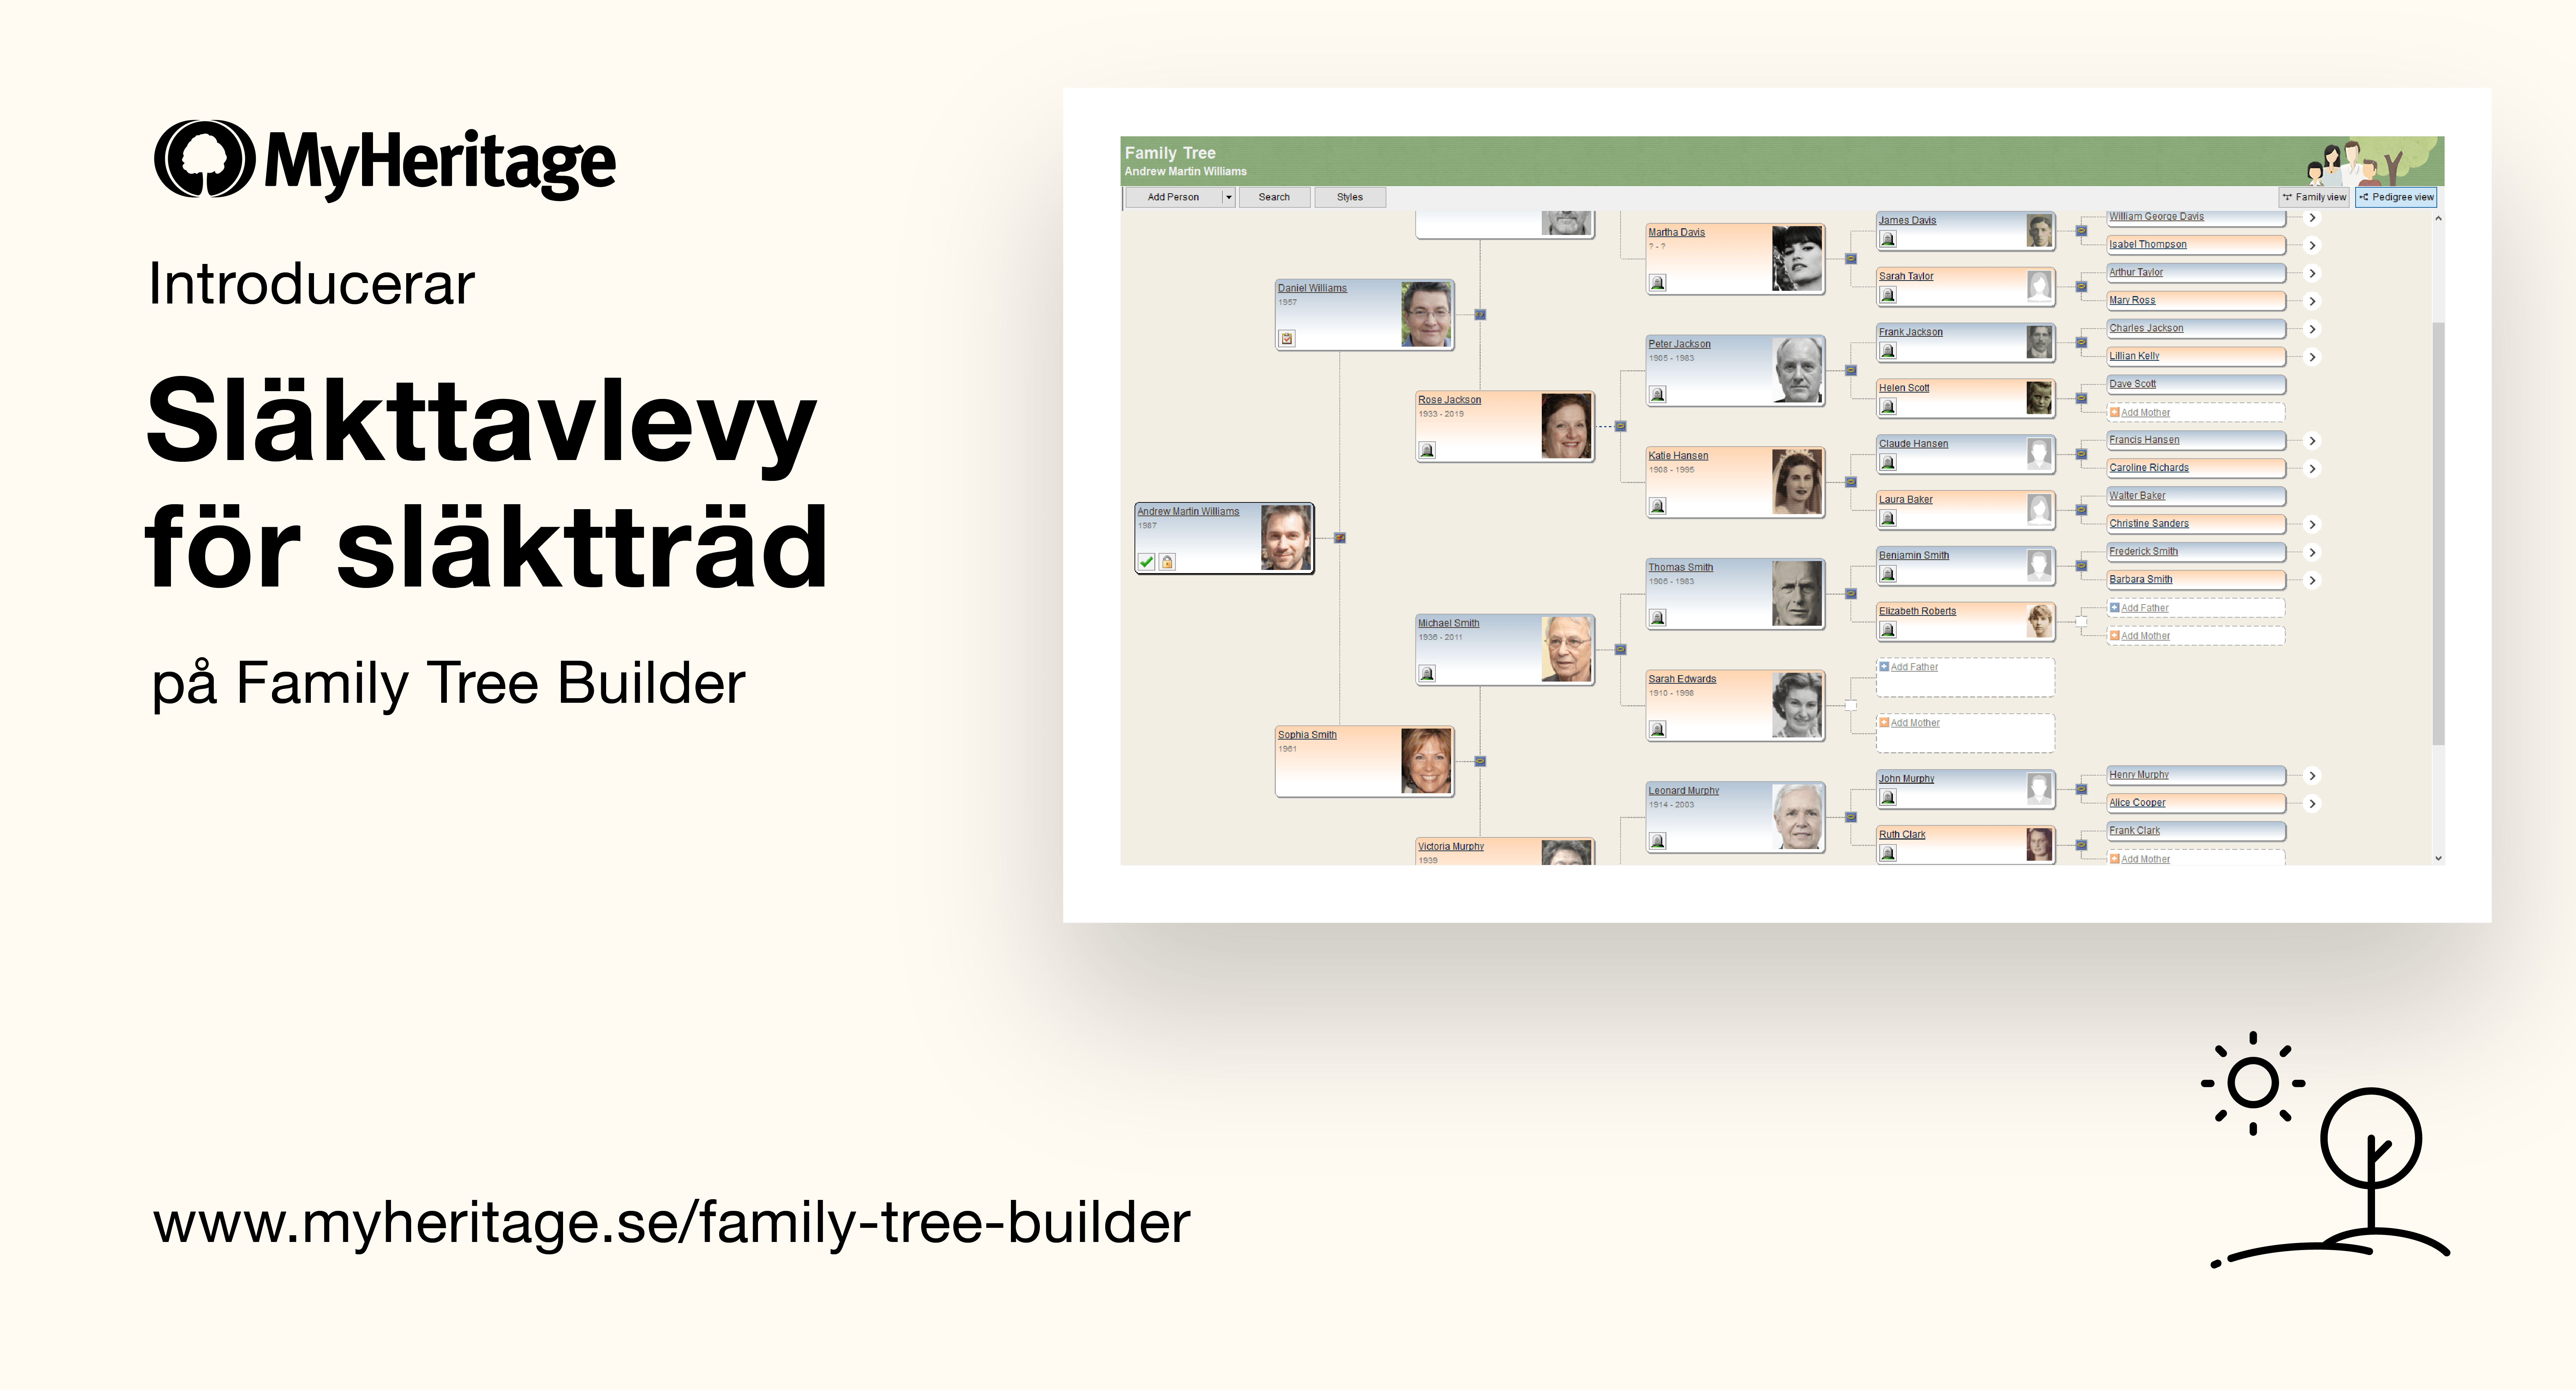 Släkttavlevyn är nu tillgänglig på Family Tree Builder